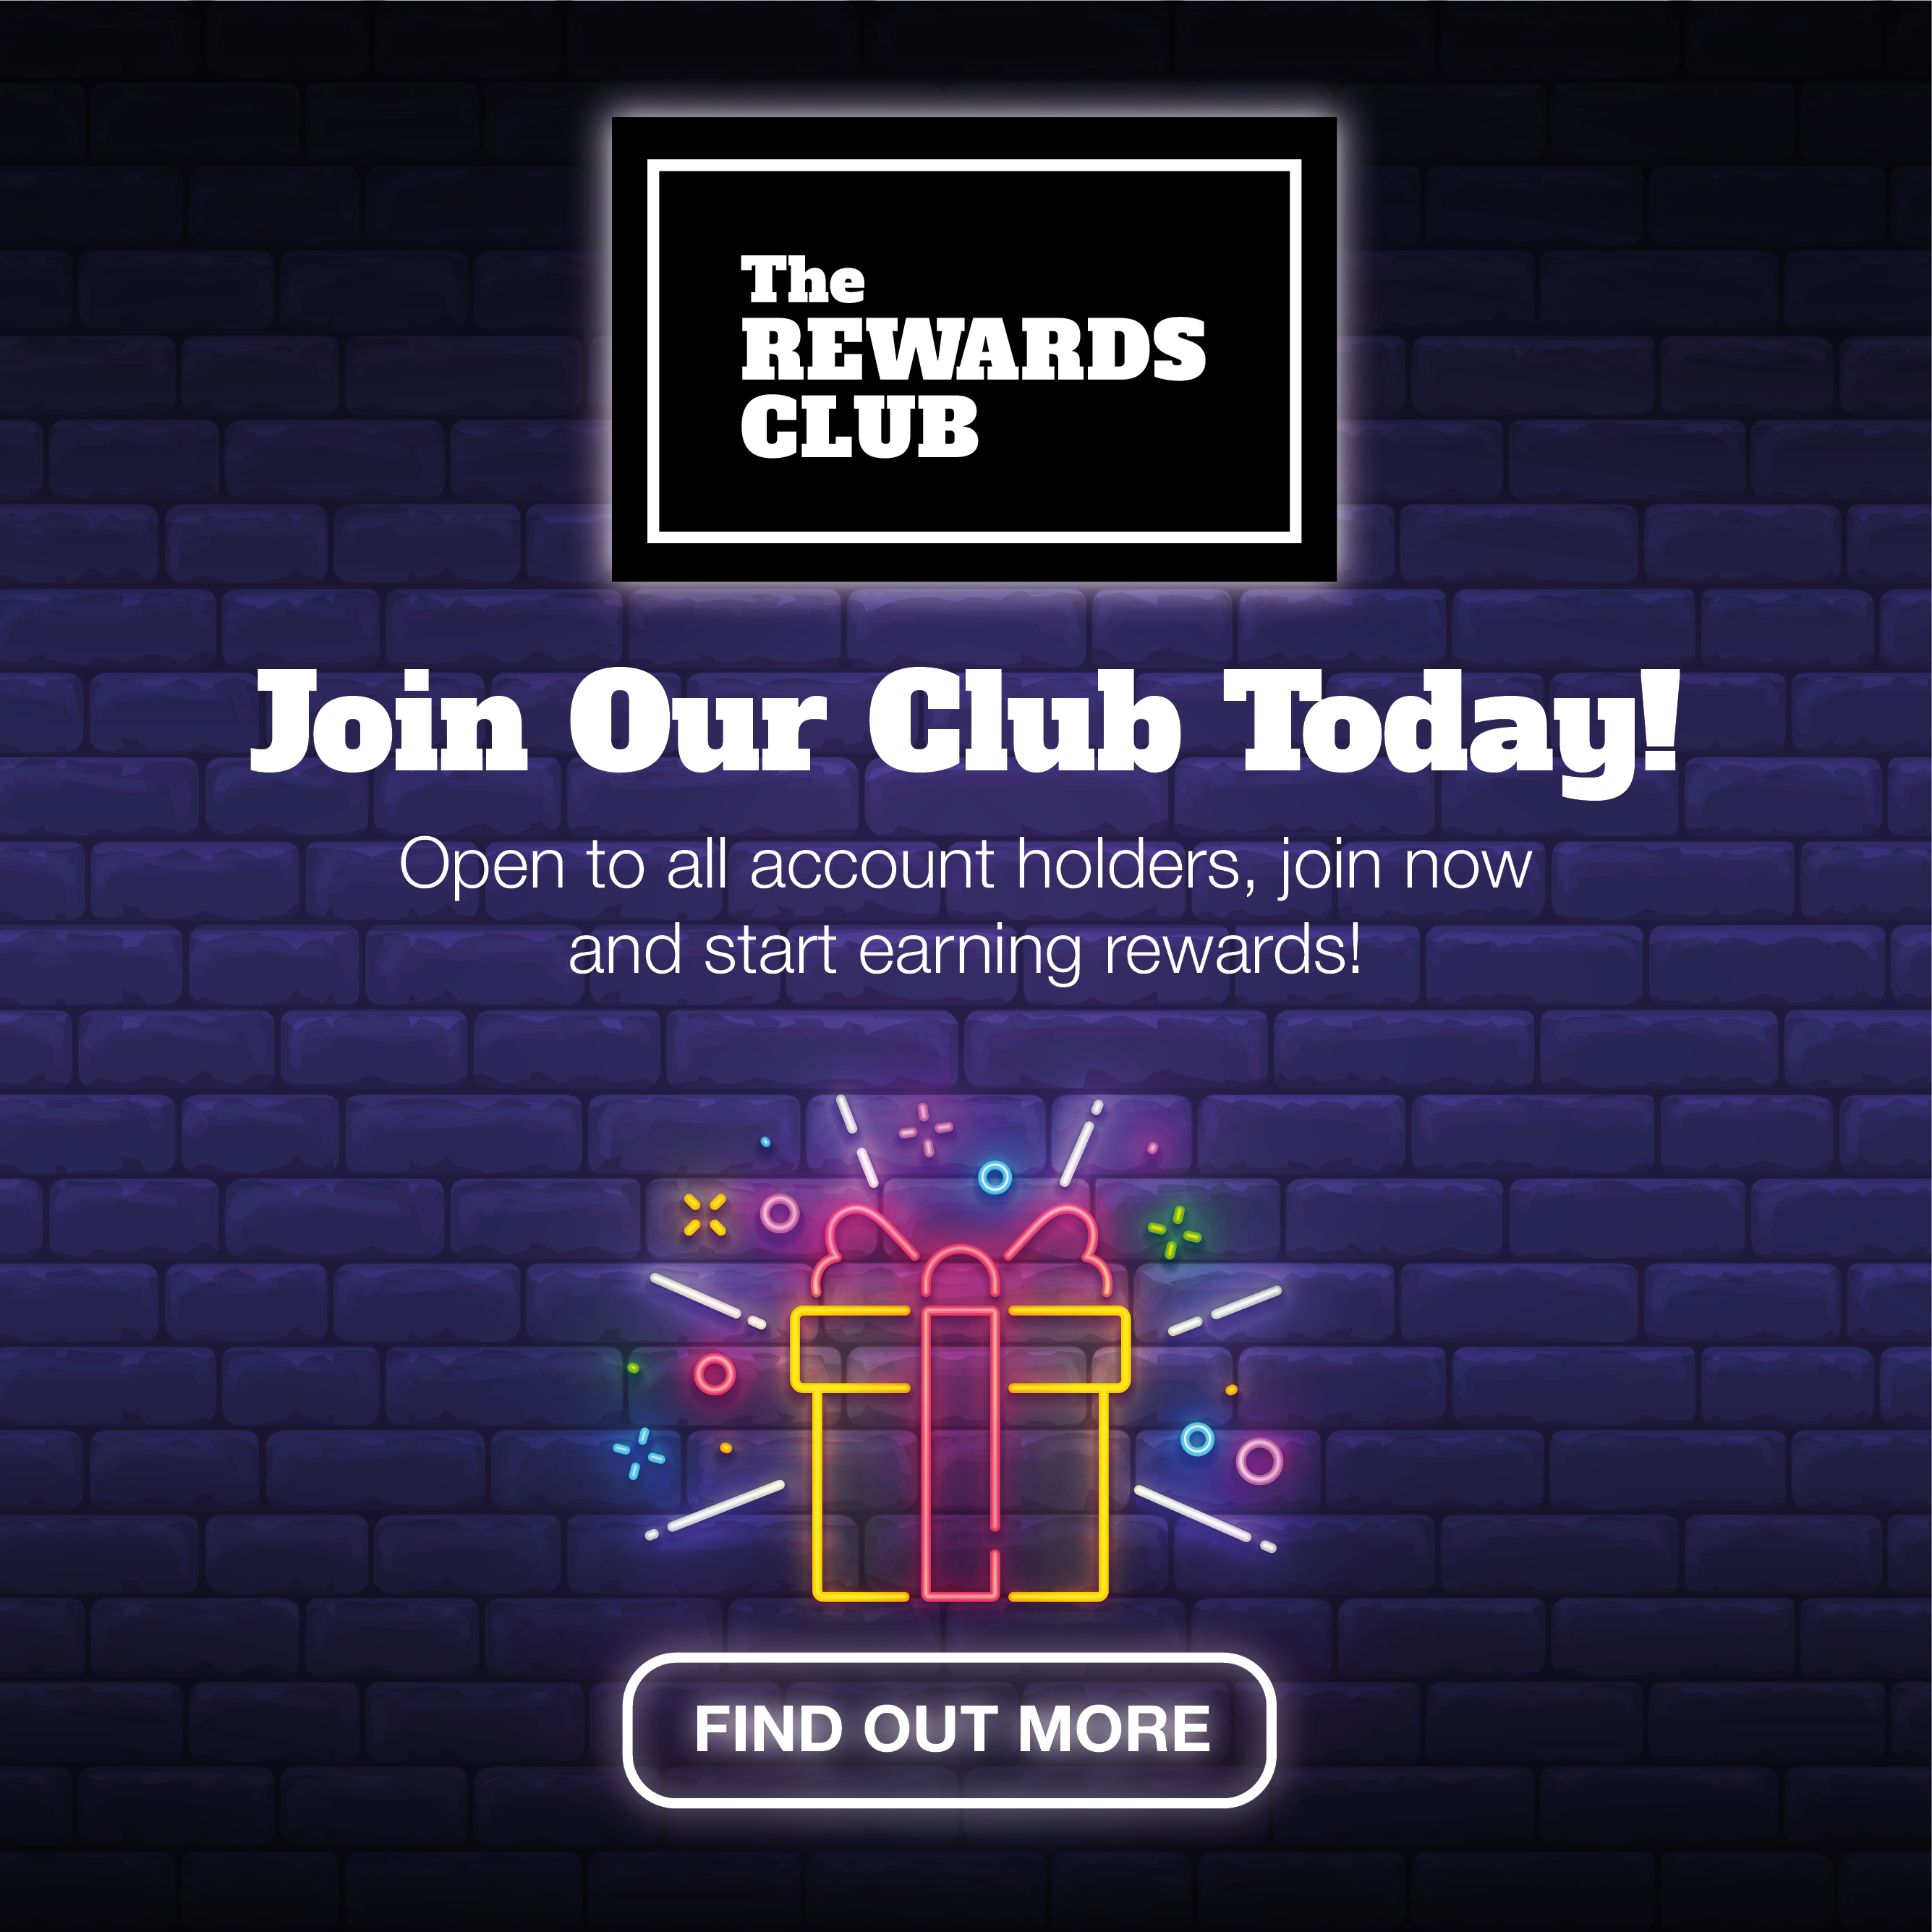 The Rewards Club